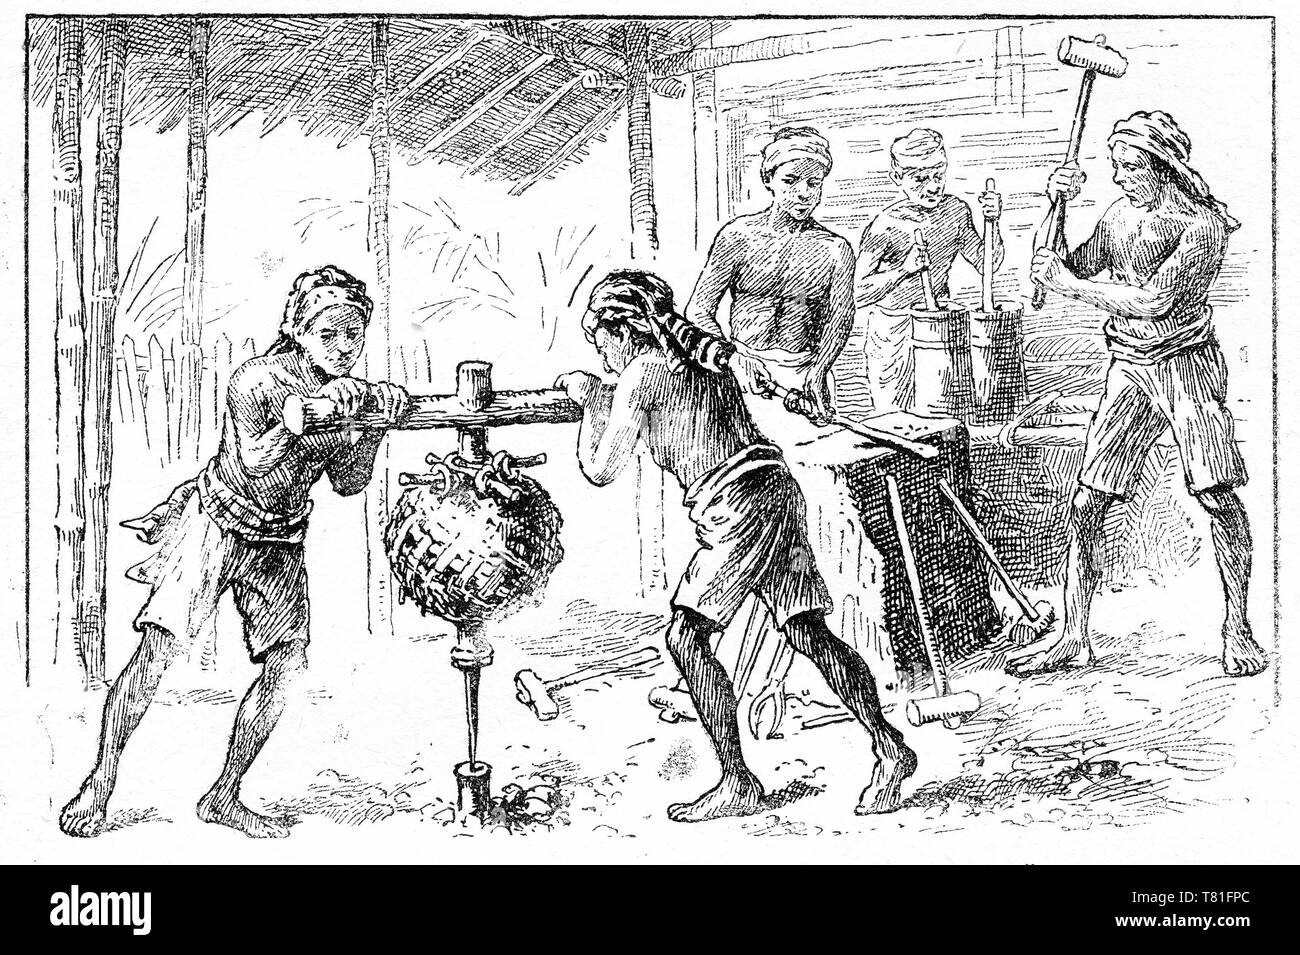 Incisione di una lavoratori asiatici in un fabbro del negozio che lavora presso un'incudine. Due ragazzi stanno girando un primitivo trapano ponderata per effettuare un foro di un pezzo di metallo. Chatterbox magazine, 1917 Foto Stock